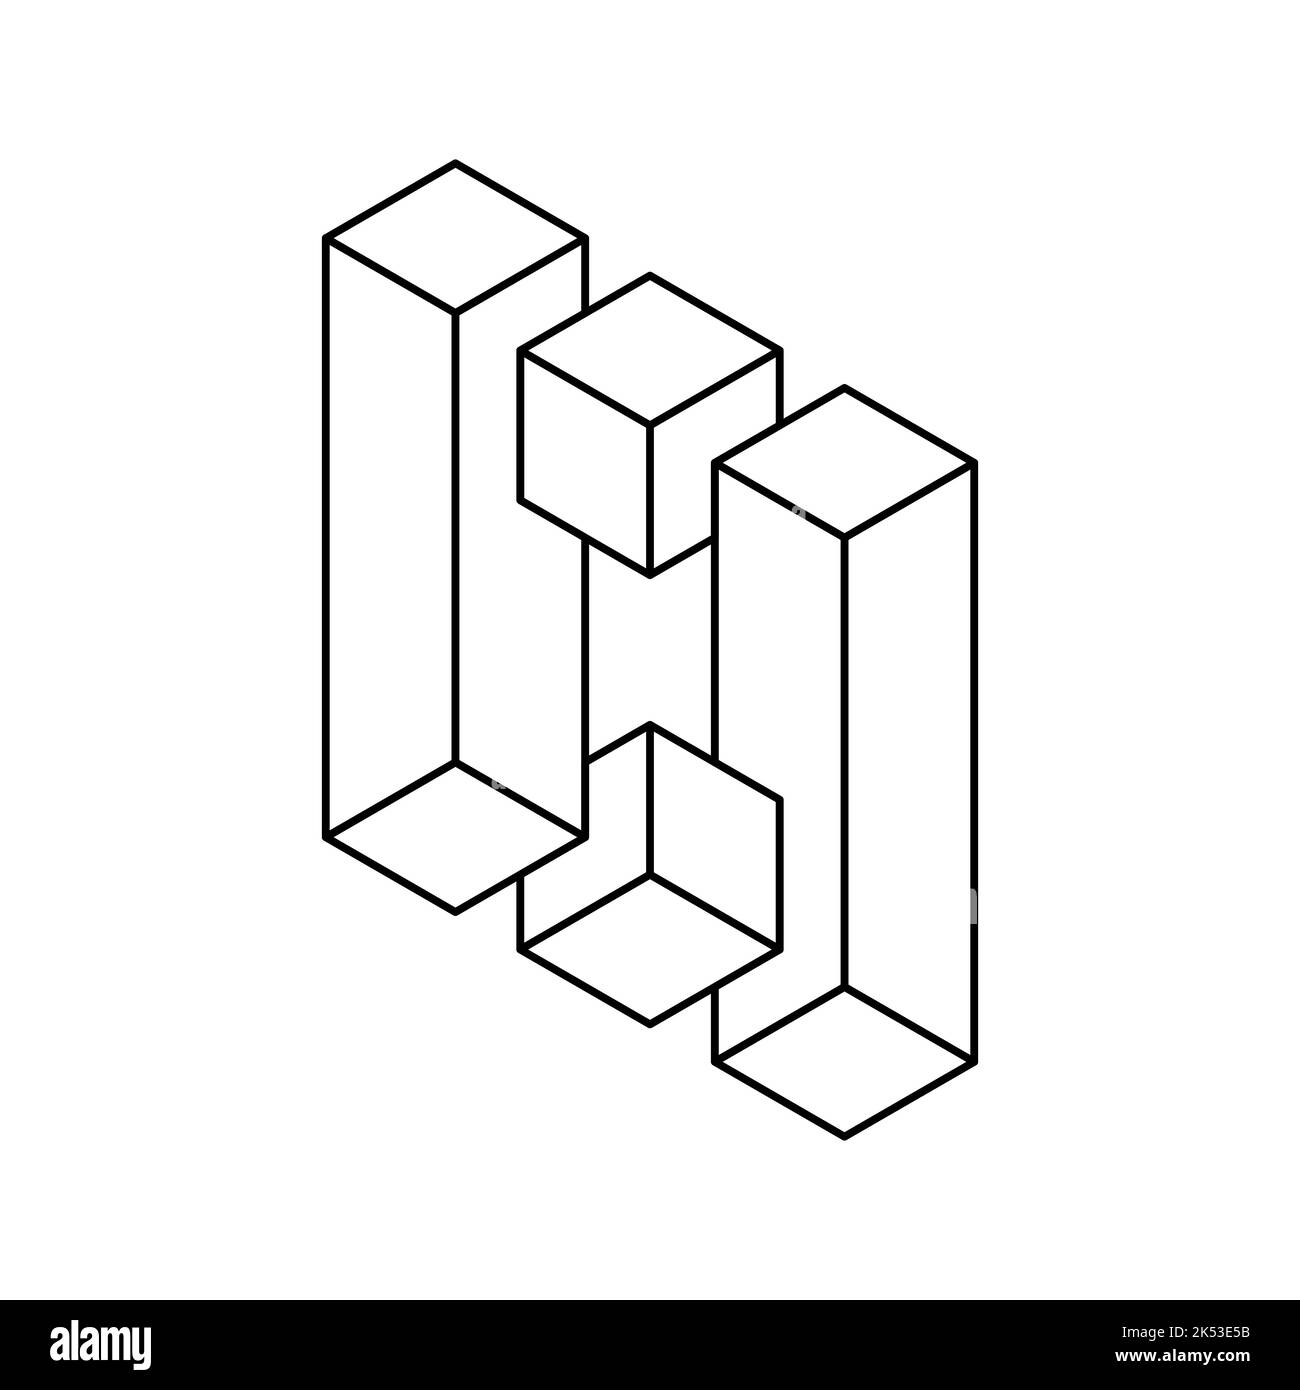 Icona della linea di forma geometrica impossibile. Cubi e rettangoli in prospettiva 3D. Illusione ottica, effetto visivo, trucco mentale. Vettore oggetto Esher penrose Illustrazione Vettoriale